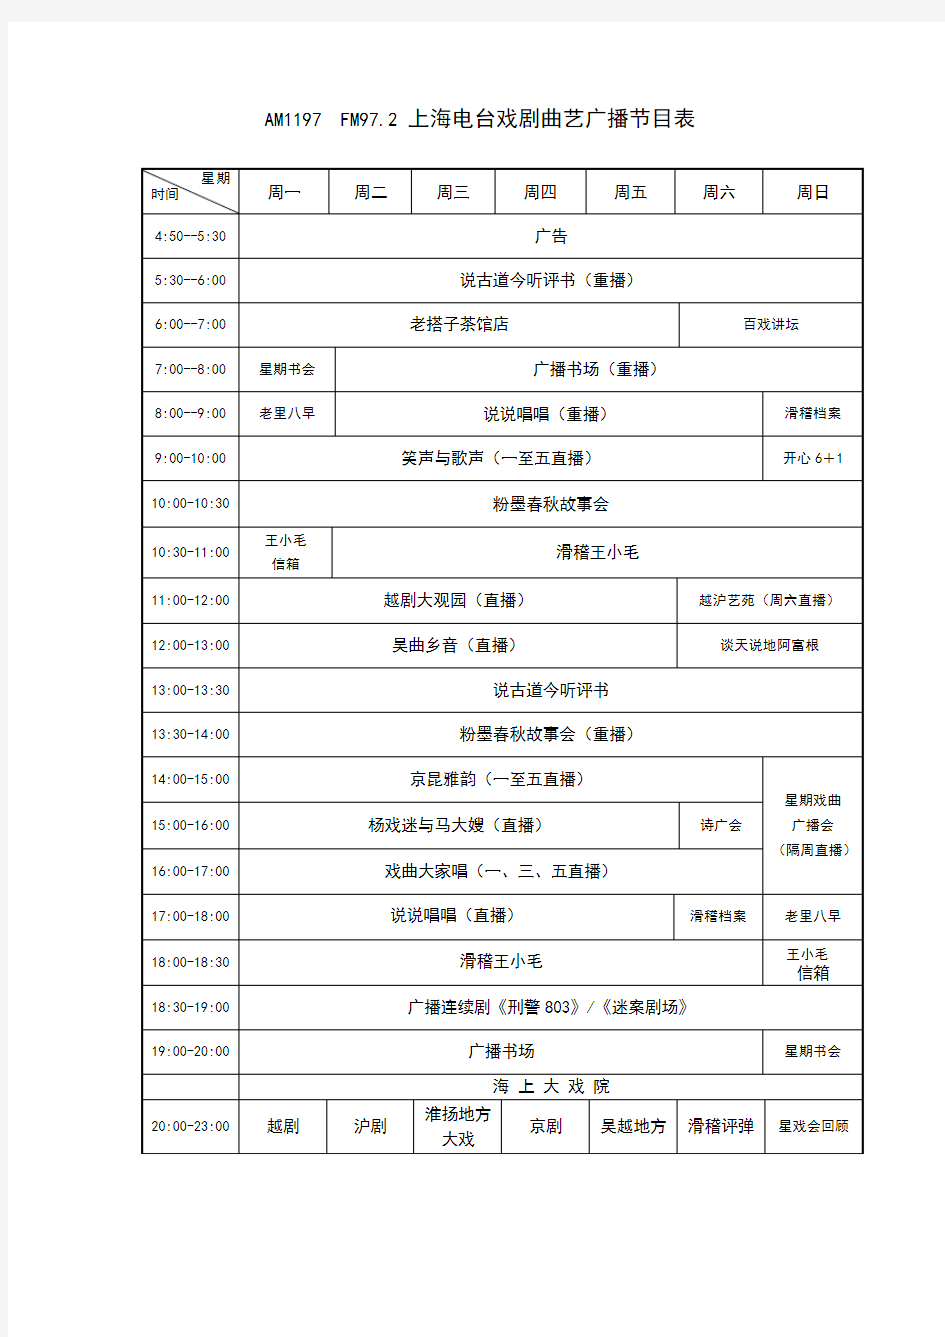 上海戏曲广播节目时间表